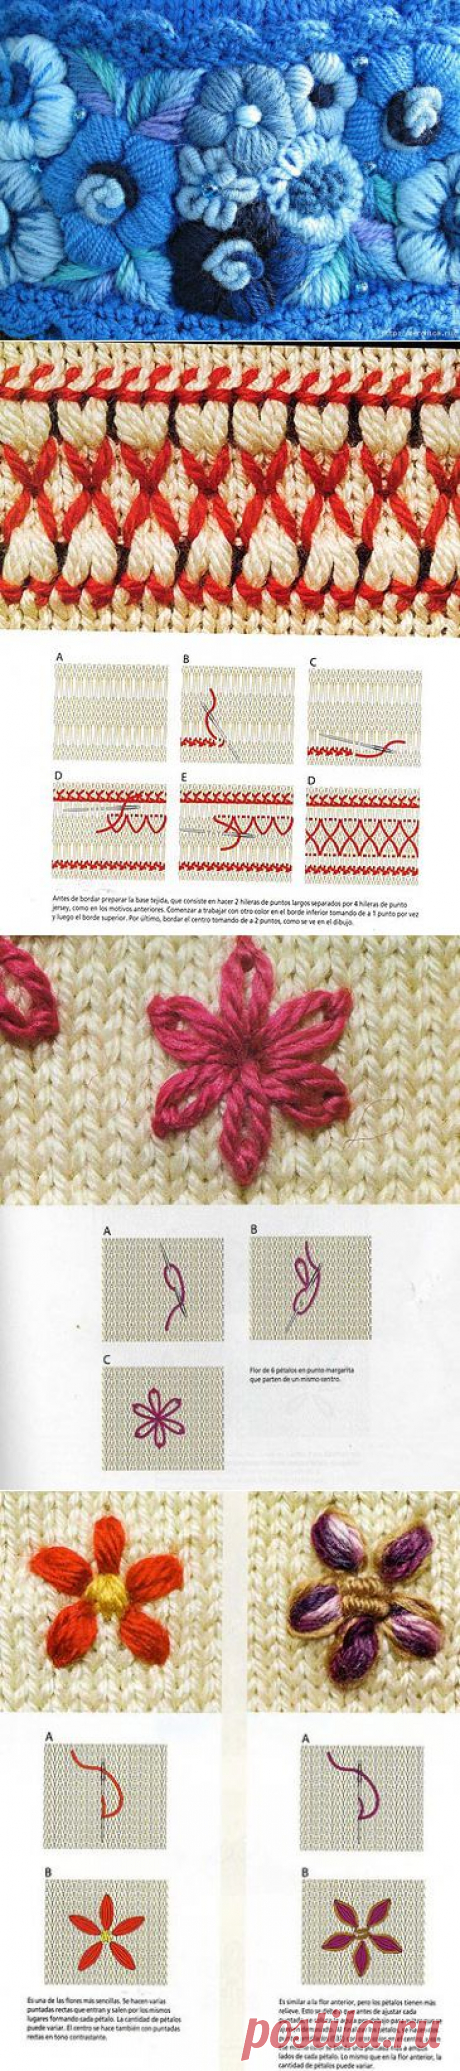 Вышивка по вязаному полотну часть 2.